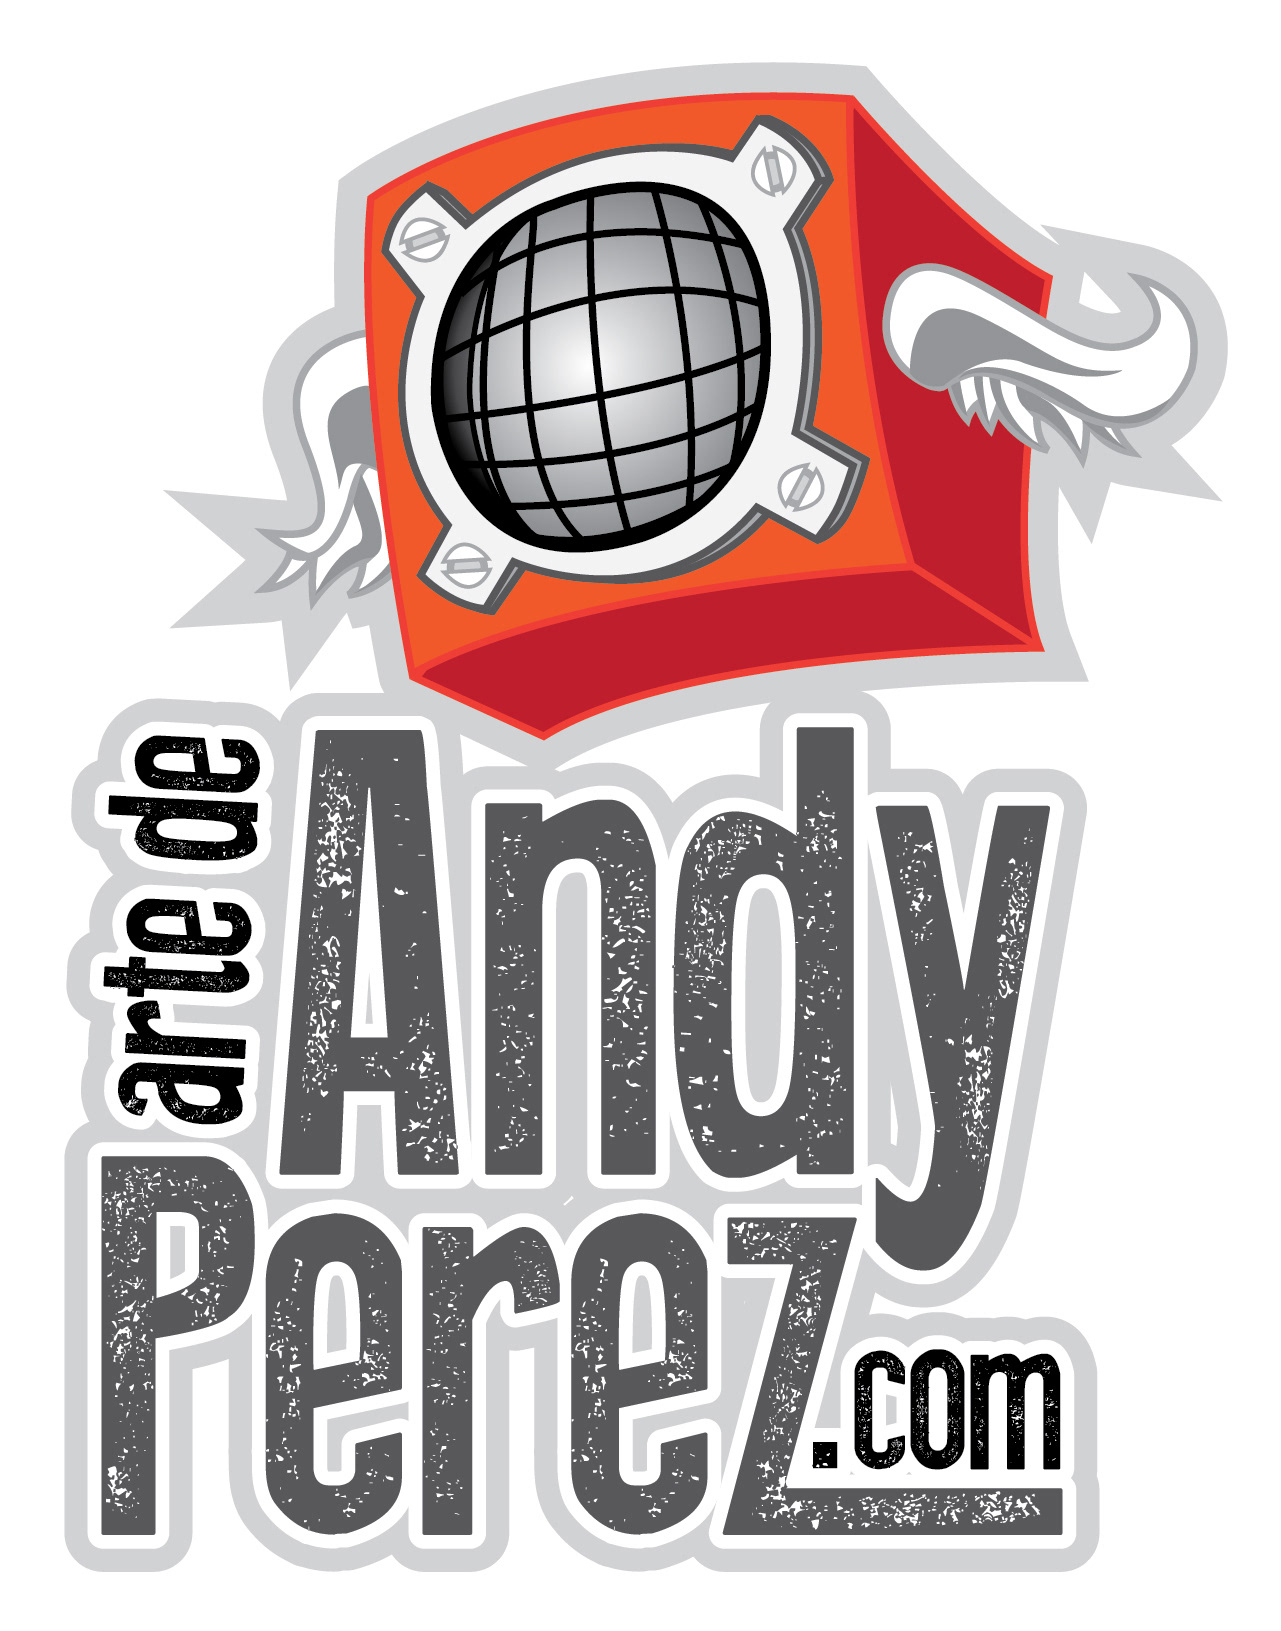 Andy Perez